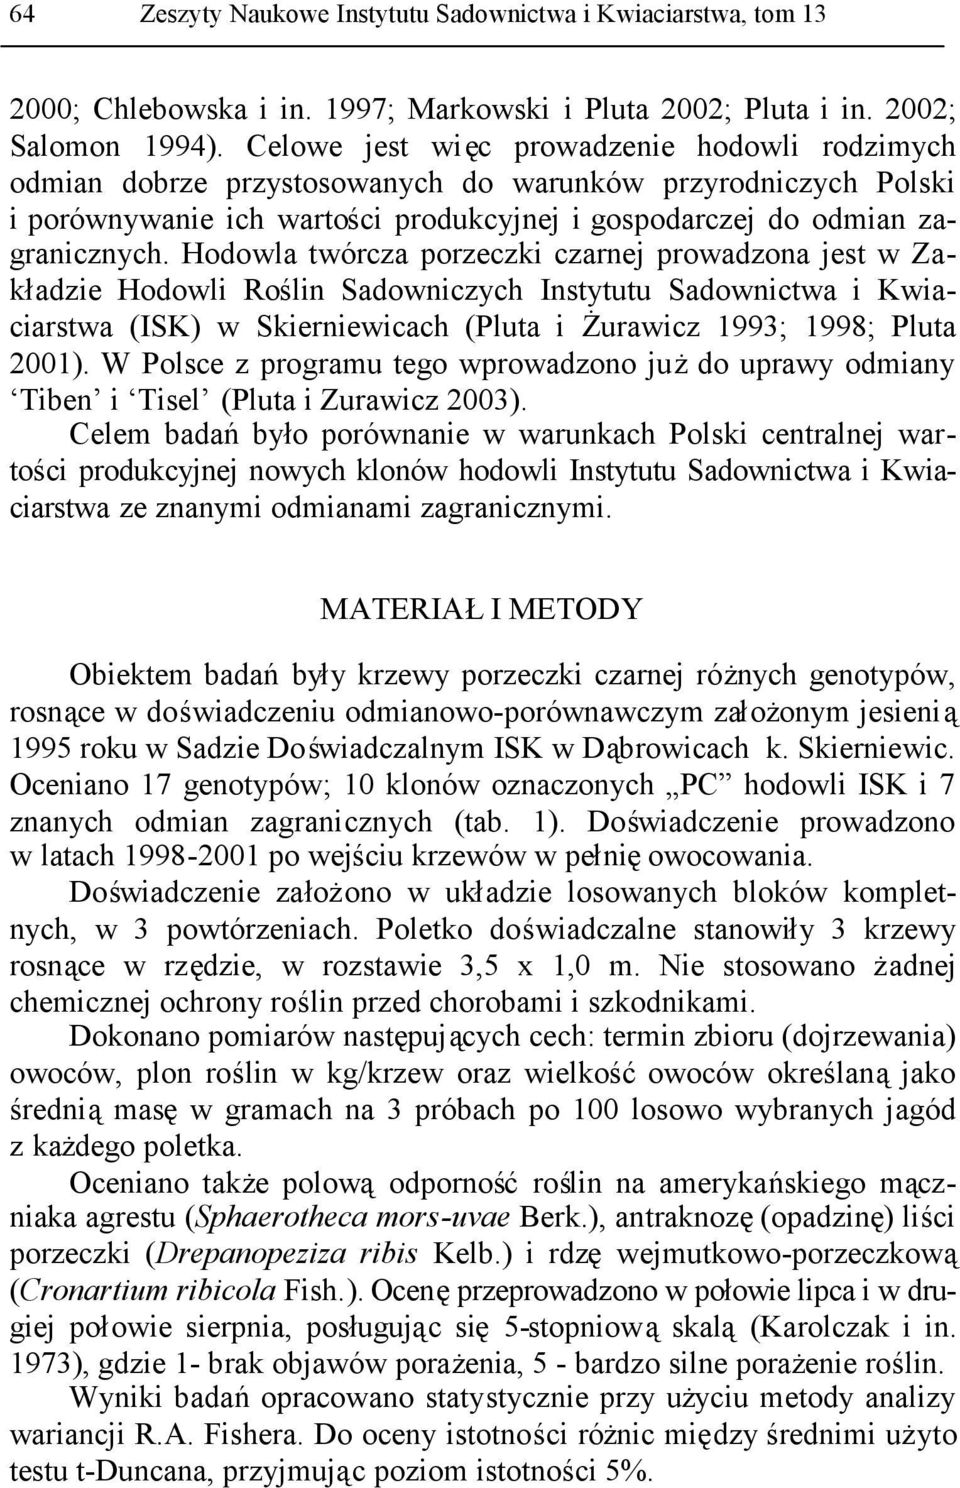 Hodowla twórcza porzeczki czarnej prowadzona jest w Zakładzie Hodowli Roślin Sadowniczych Instytutu Sadownictwa i Kwiaciarstwa (ISK) w Skierniewicach (Pluta i Żurawicz 1993; 1998; Pluta 2001).